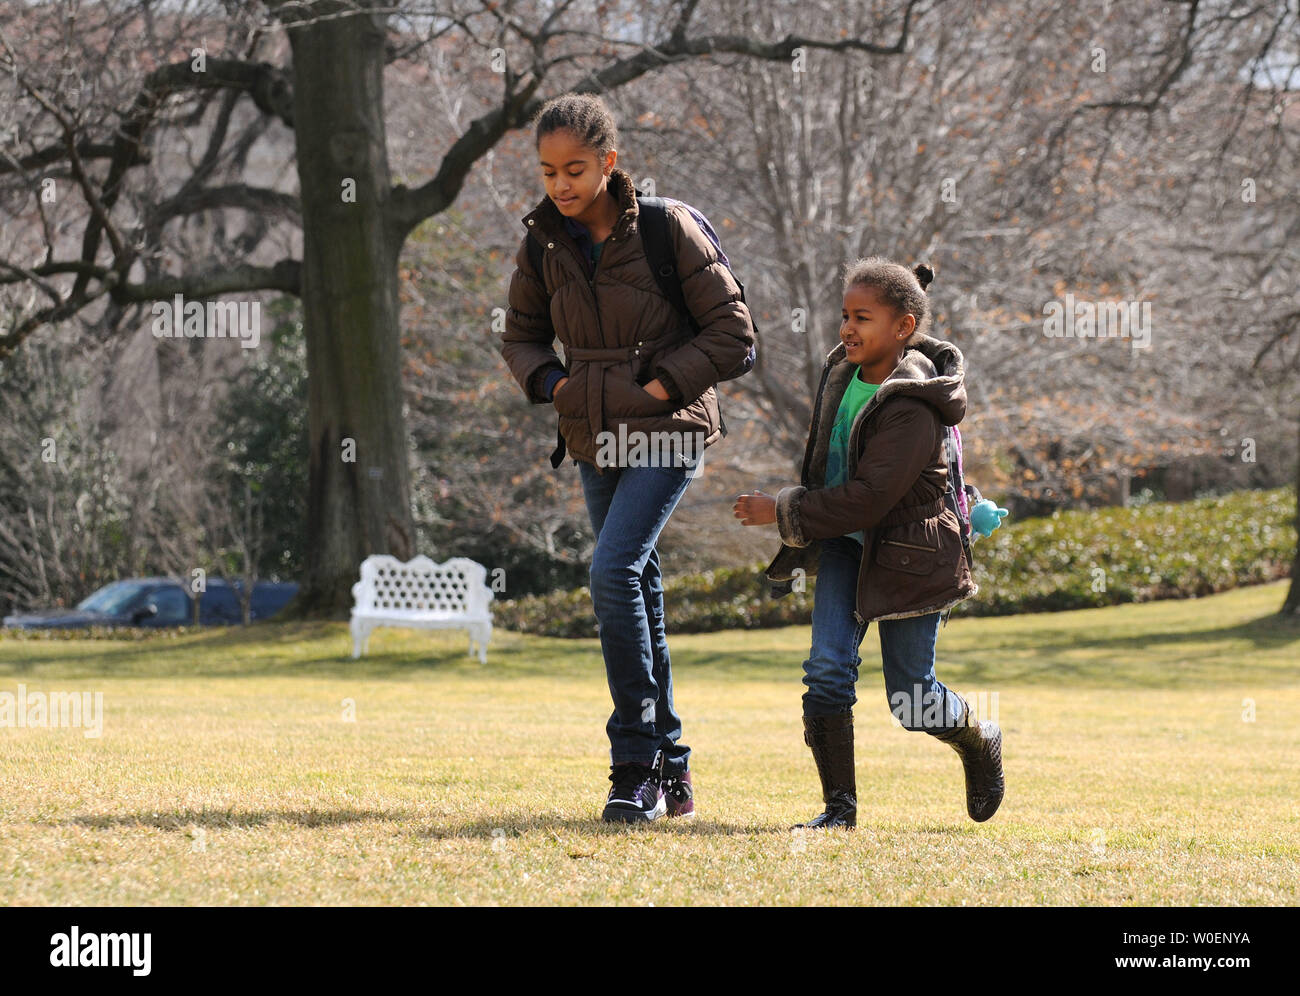 Le président Barack Obama's Daughters Malia (L),10, et Sasha, 7, retour à la Maison Blanche après un week-end avec leurs parents à Chicago, sur la pelouse Sud de la Maison Blanche à Washington, le 16 février 2009. (UPI Photo/Kevin Dietsch) Banque D'Images